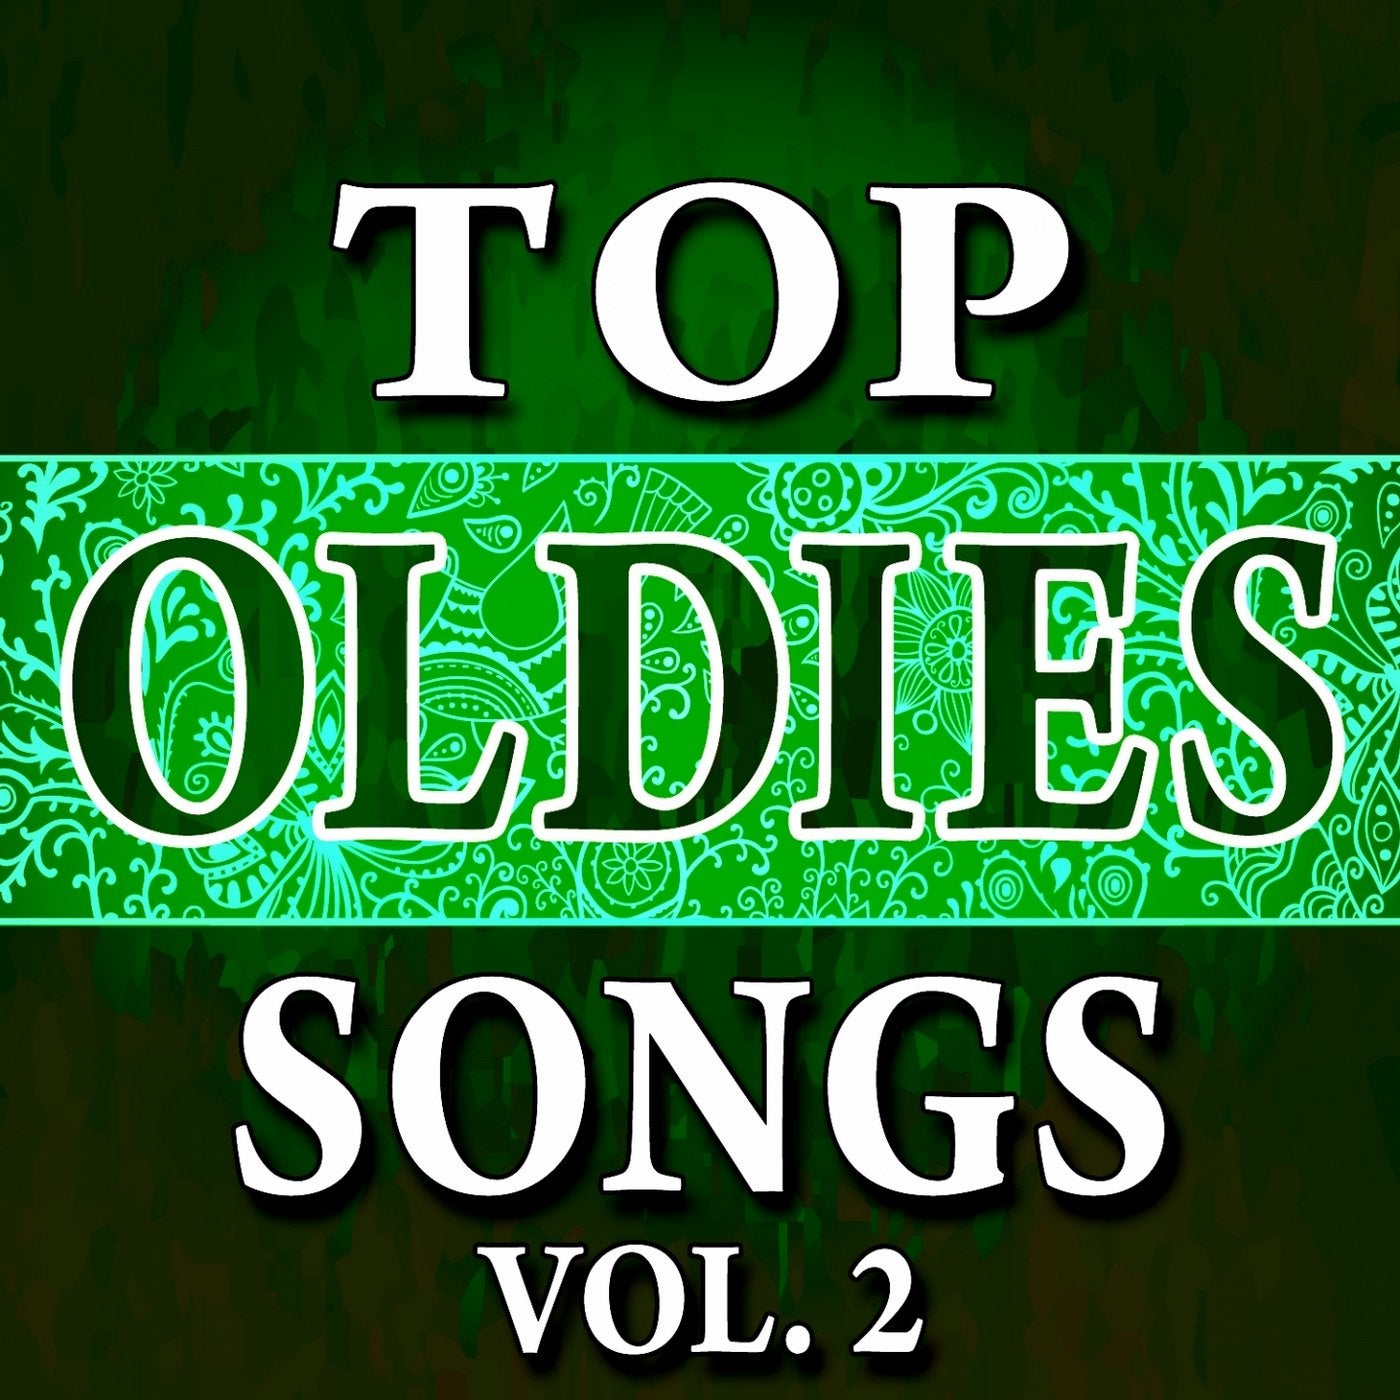 Top Oldies Songs, Vol. 2